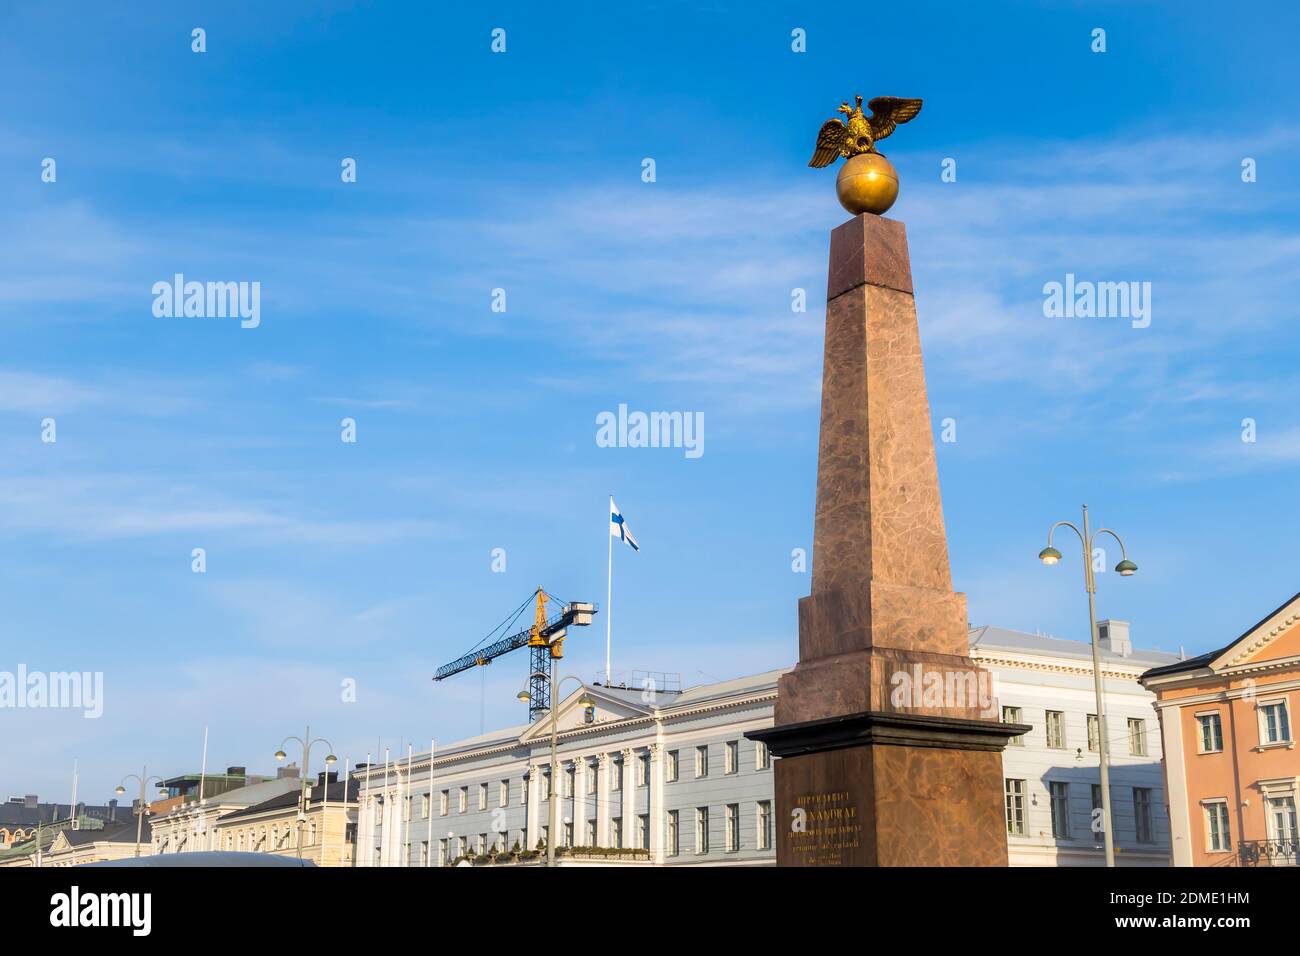 Simboli moderni e storici di Helsinki: Bandiera nazionale, gru da costruzione e stella dedicata all'EMPRES russo Foto Stock